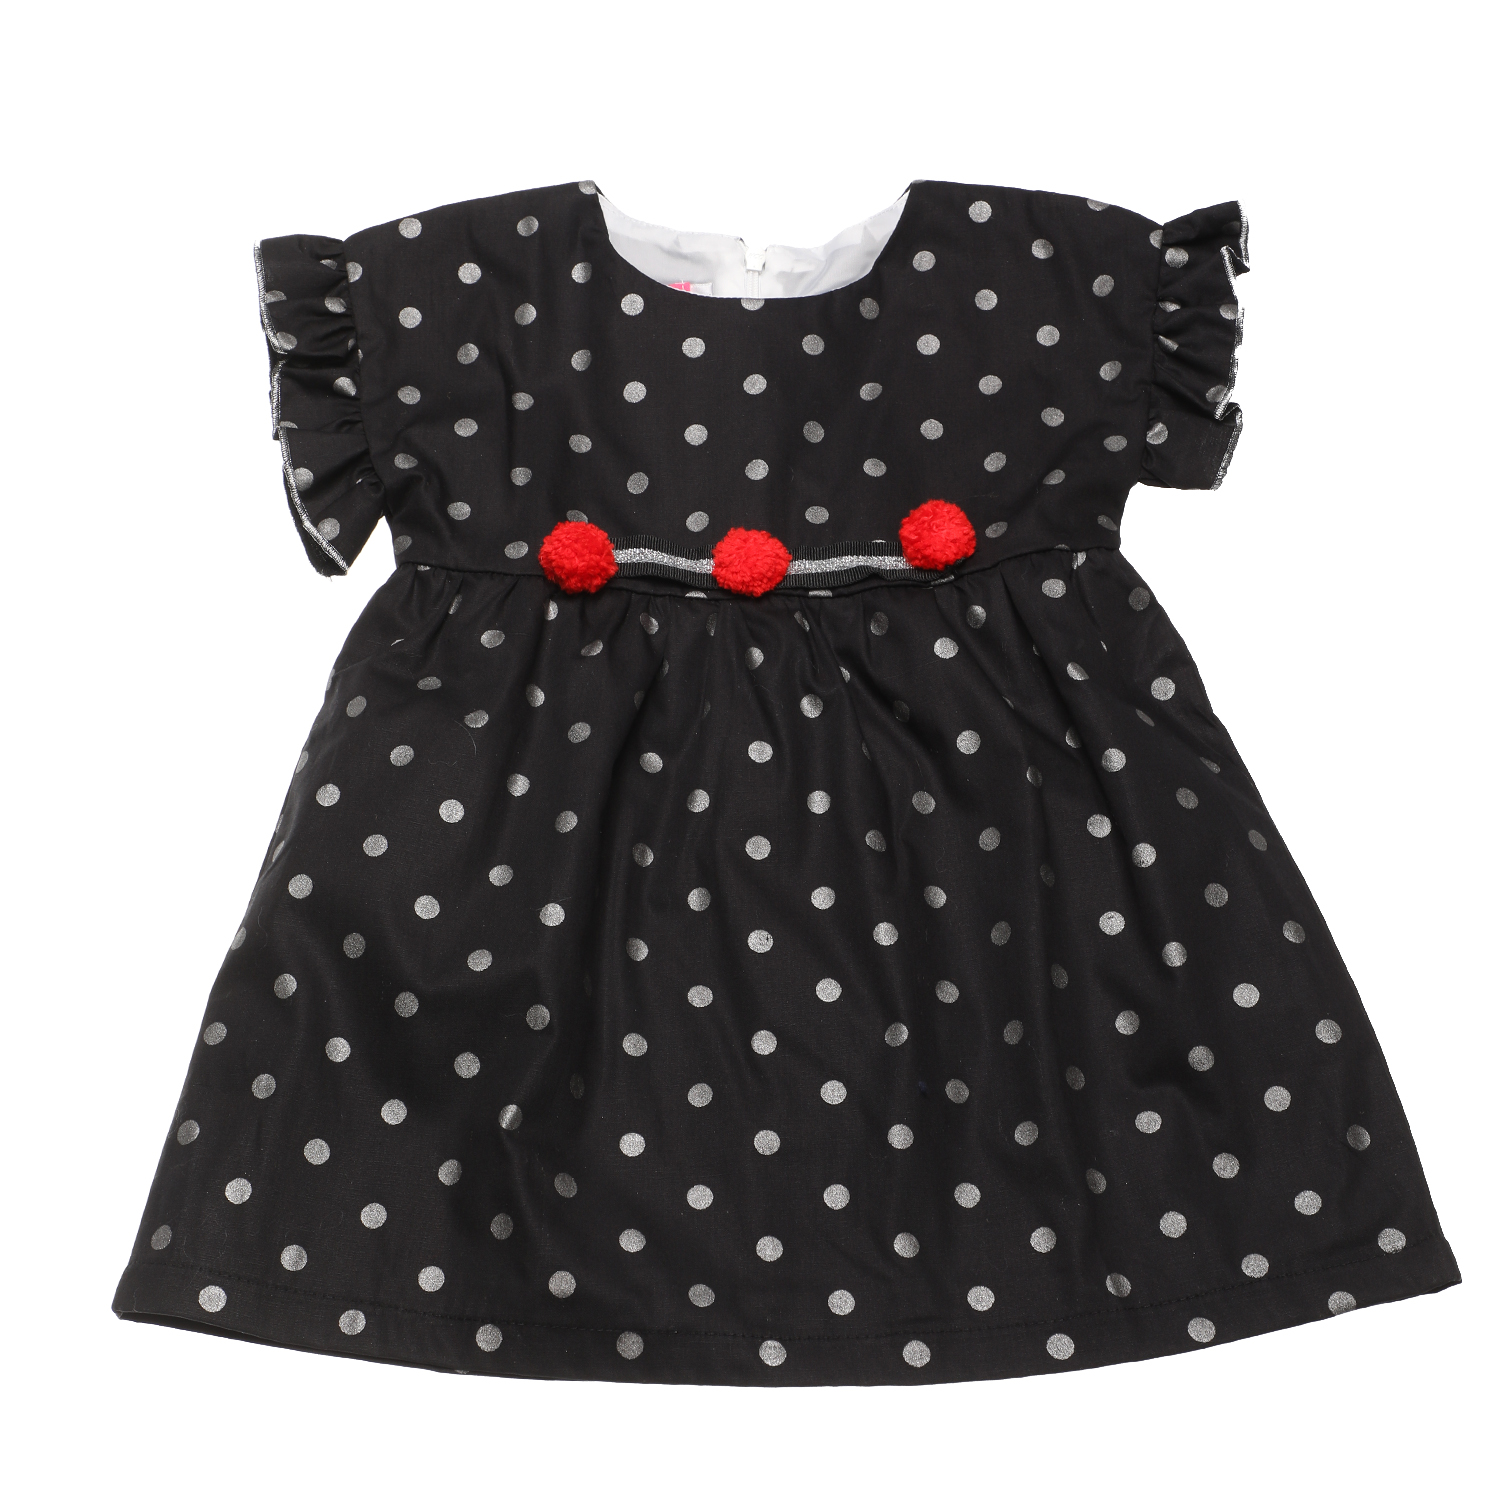 Παιδικά/Girls/Ρούχα/Φορέματα Κοντομάνικα-Αμάνικα SAM 0-13 - Παιδικό φόρεμα SAM 0-13 μαύρο ασημί